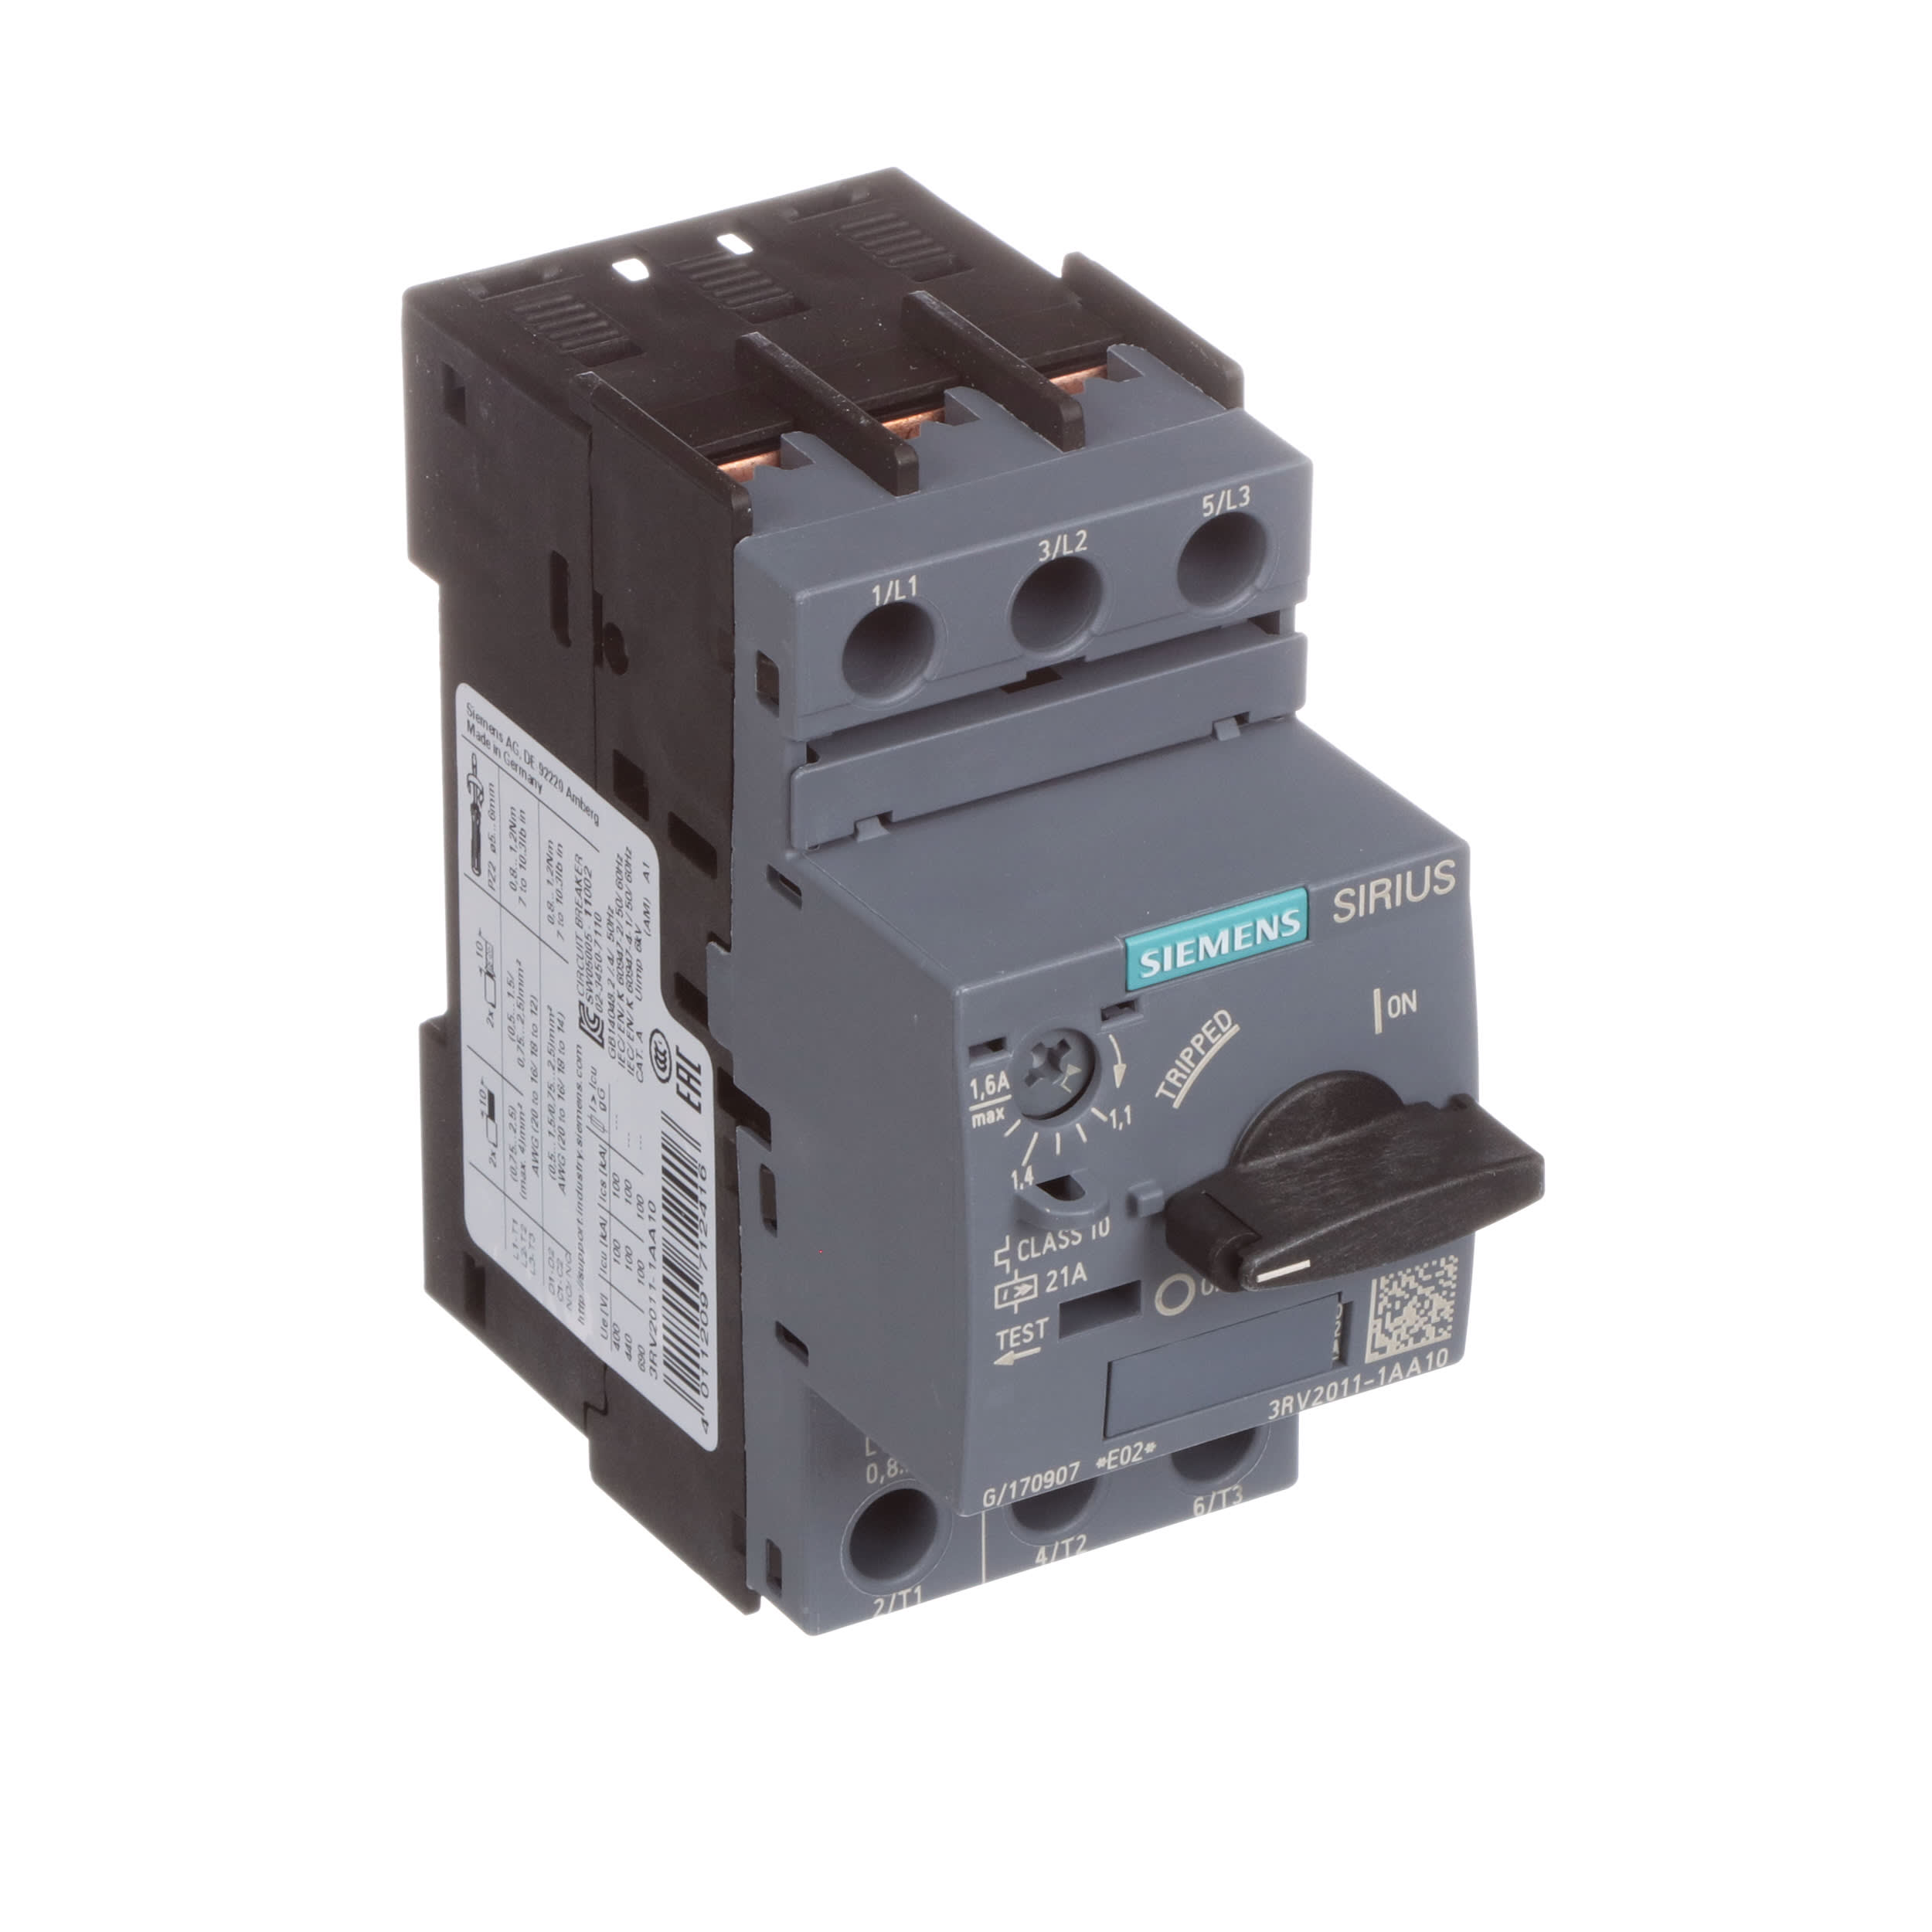 Siemens Sirius 3RV2011-1AA10 3RV2 011-1AA10 Power Switch 